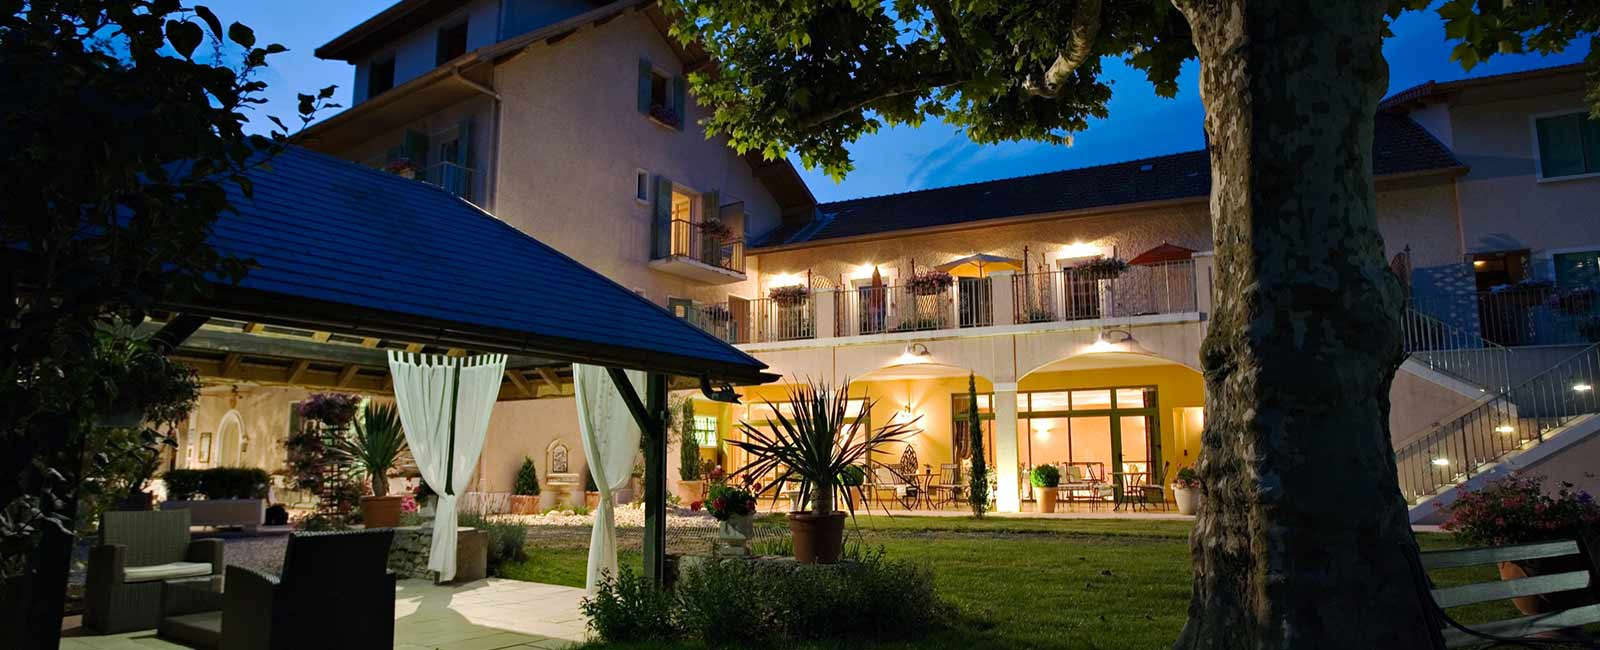 Hôtel À Aix Les Bains - Hôtel Aix Les Bains - Auberge St Simond intérieur Hotel Aix Les Bains Avec Piscine